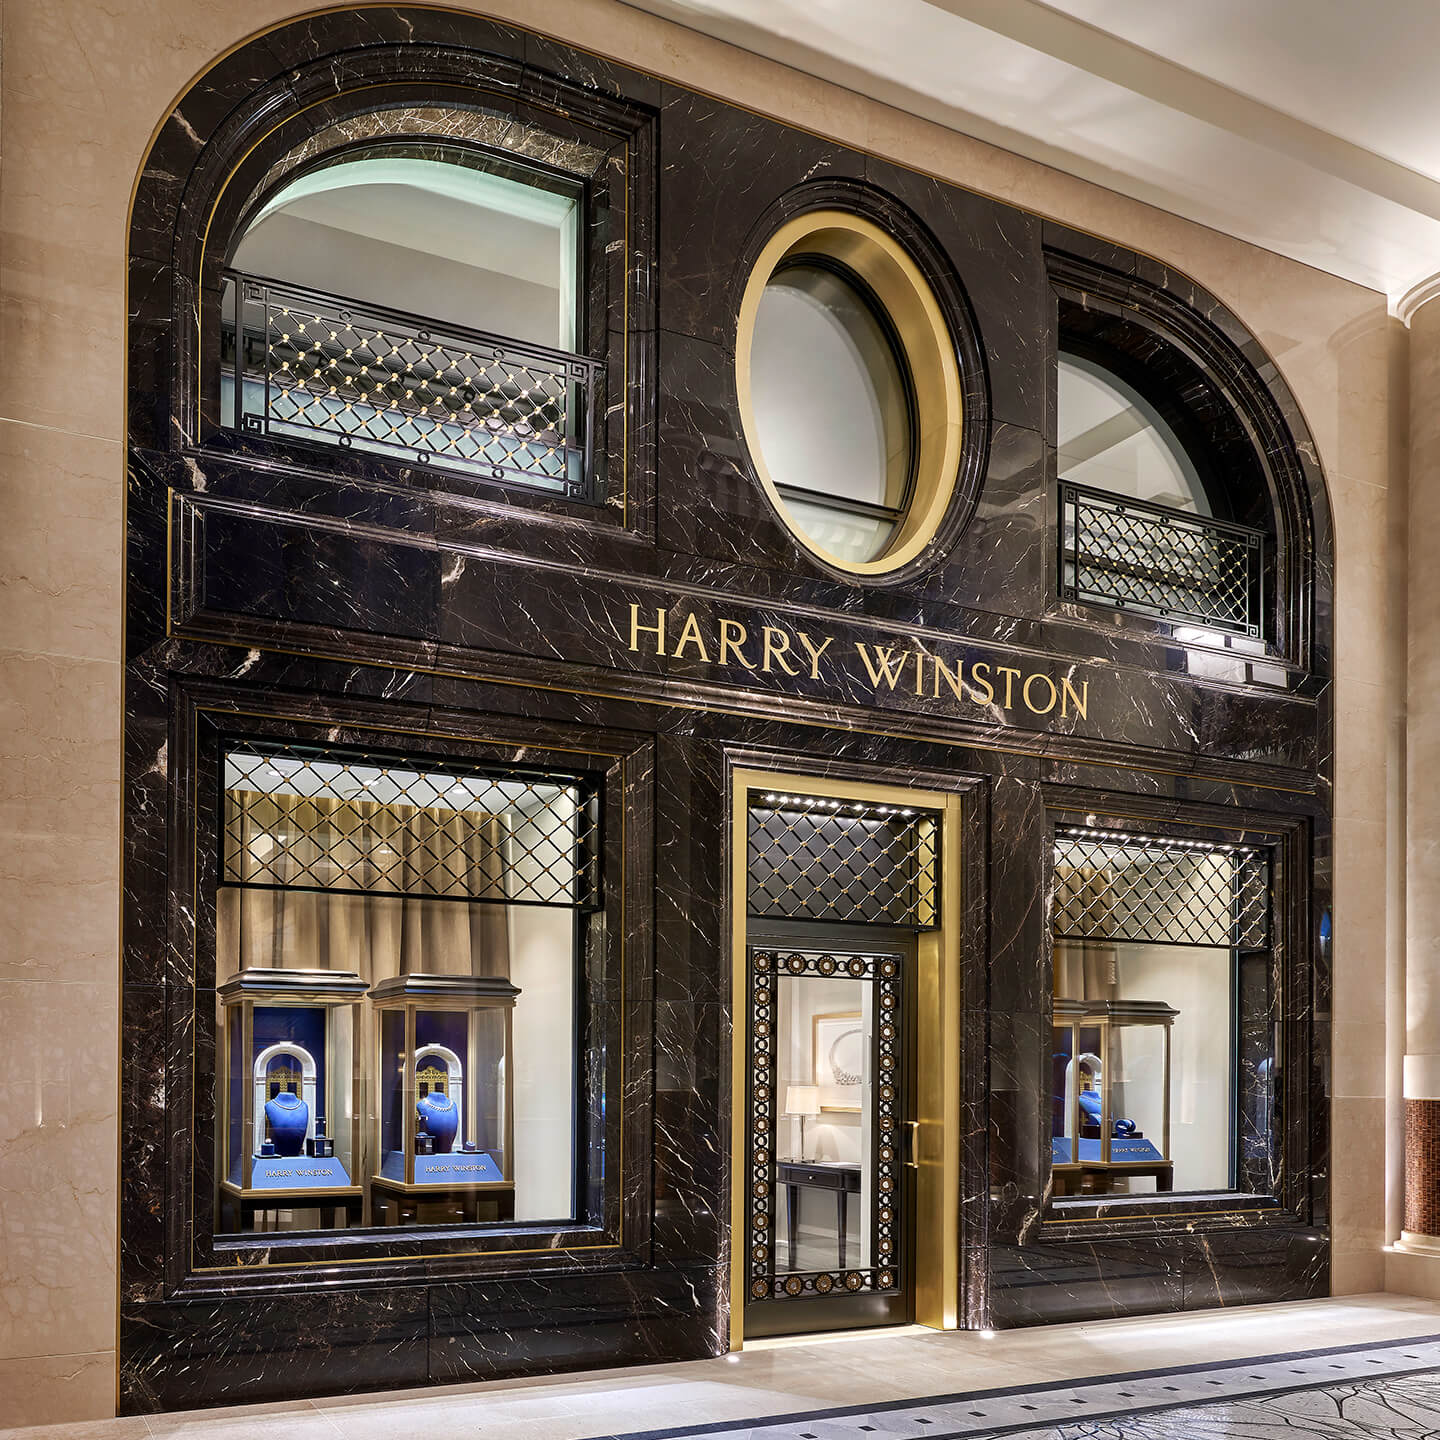 Harry Winston Opens a New Salon in Monaco